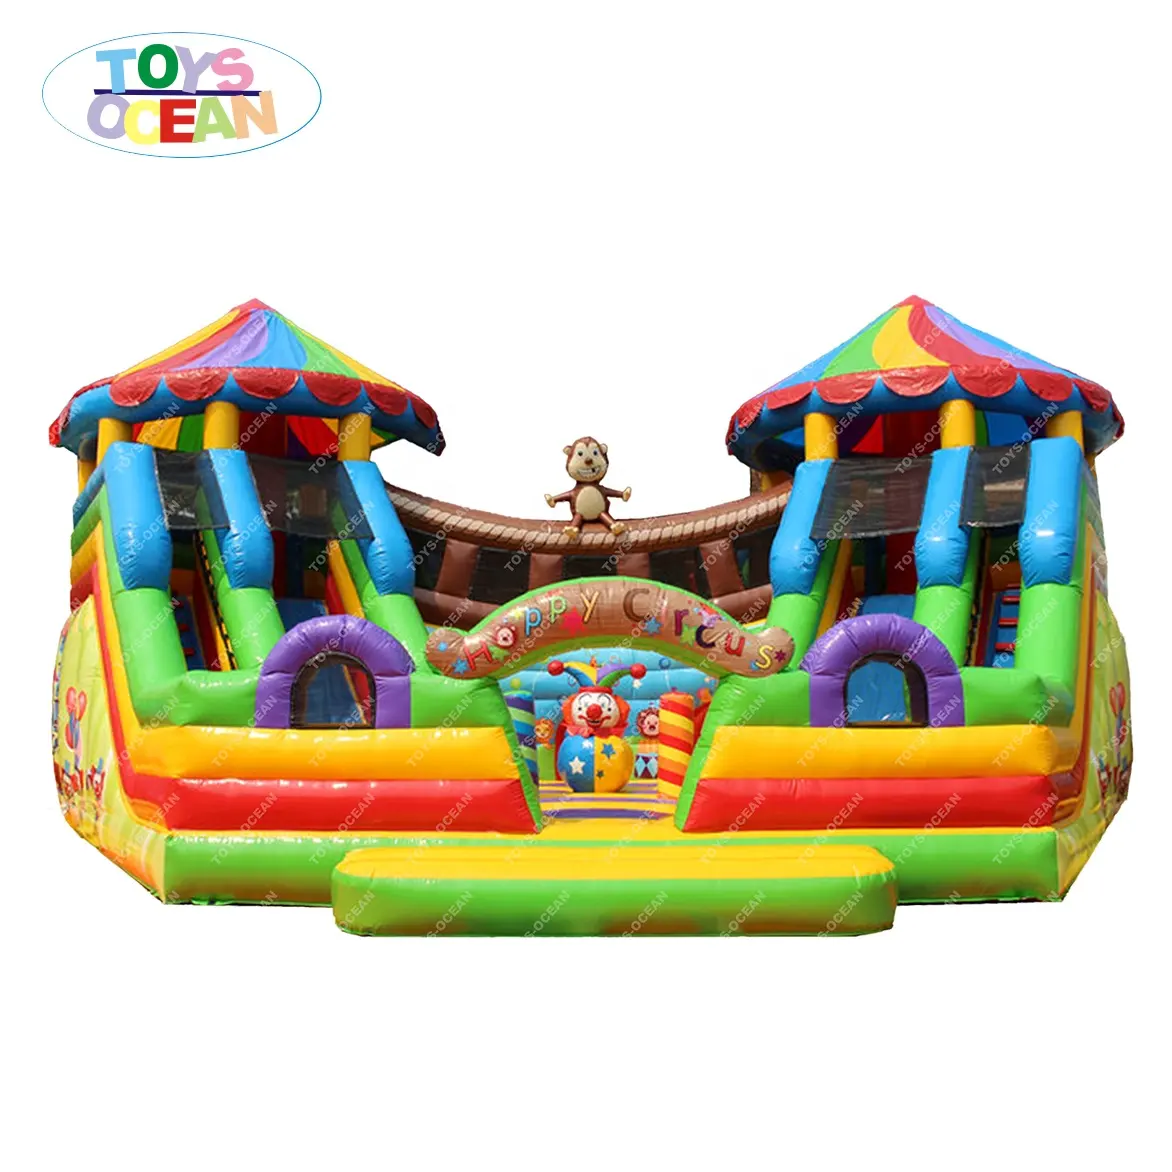 Thiết Kế Mới Bounce House Summer Fun Đồ Chơi Trẻ Em Của Lâu Đài Inflatable Trượt Trampoline Với Slide